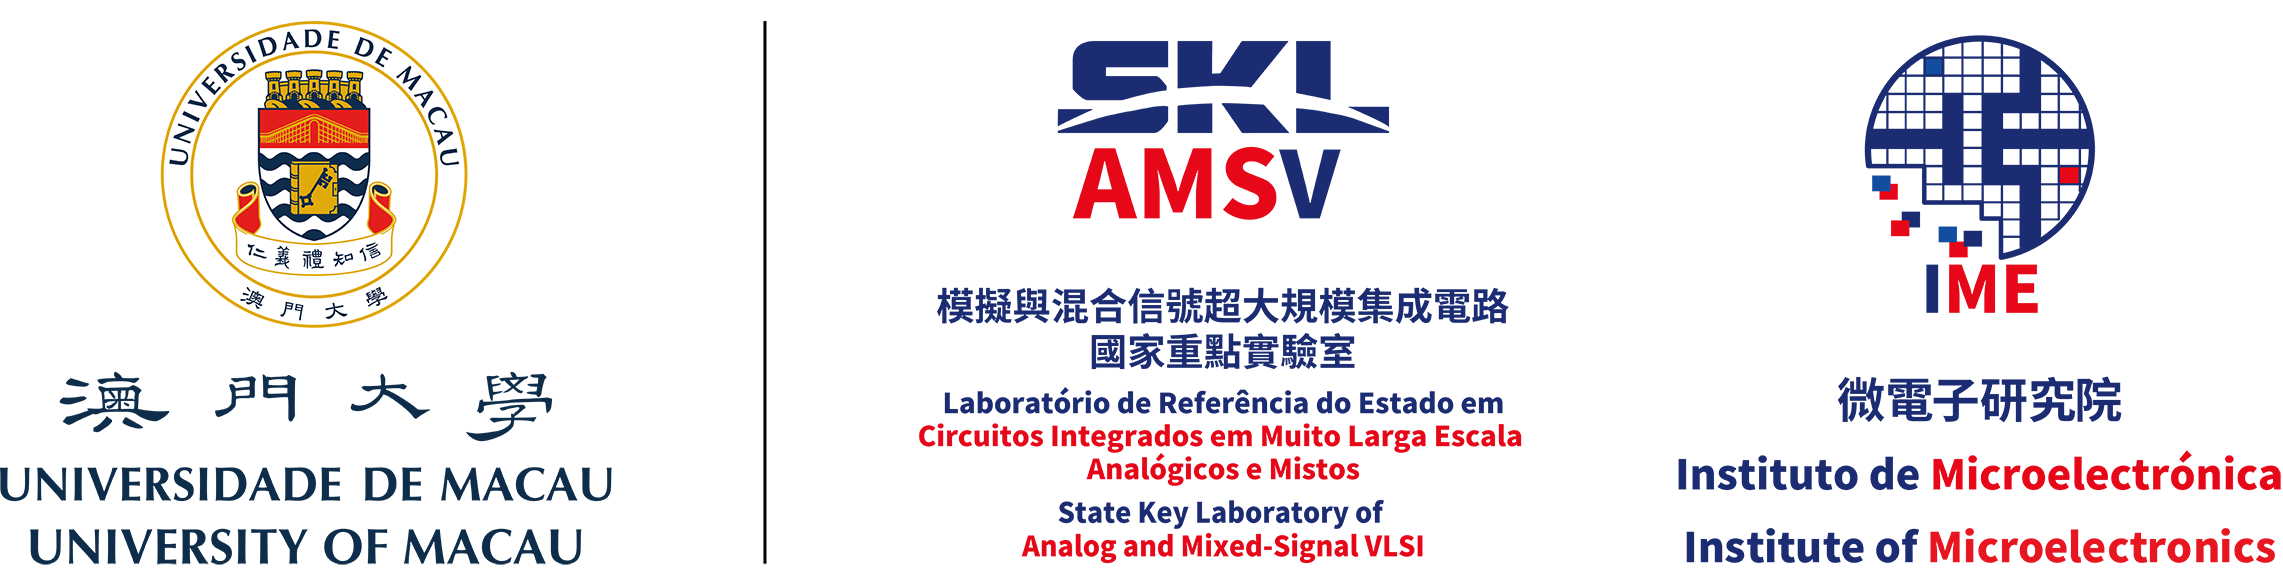 University of Macau | State Key Laboratory of Analog and Mixed-Signal VLSI Logo